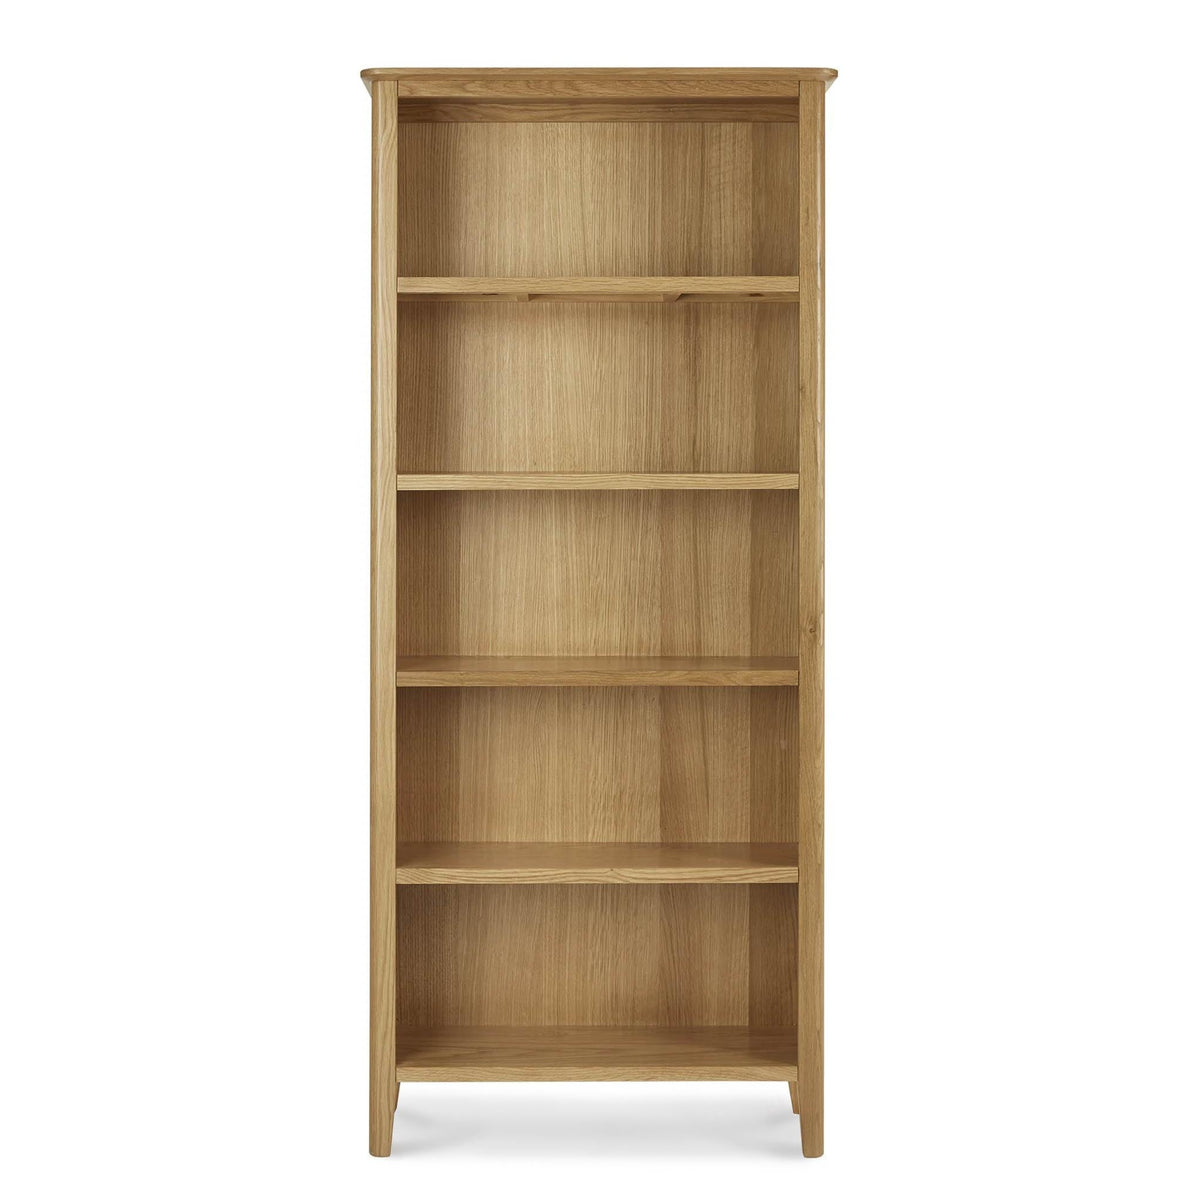 Alba Oak Large Bookcase - Front view